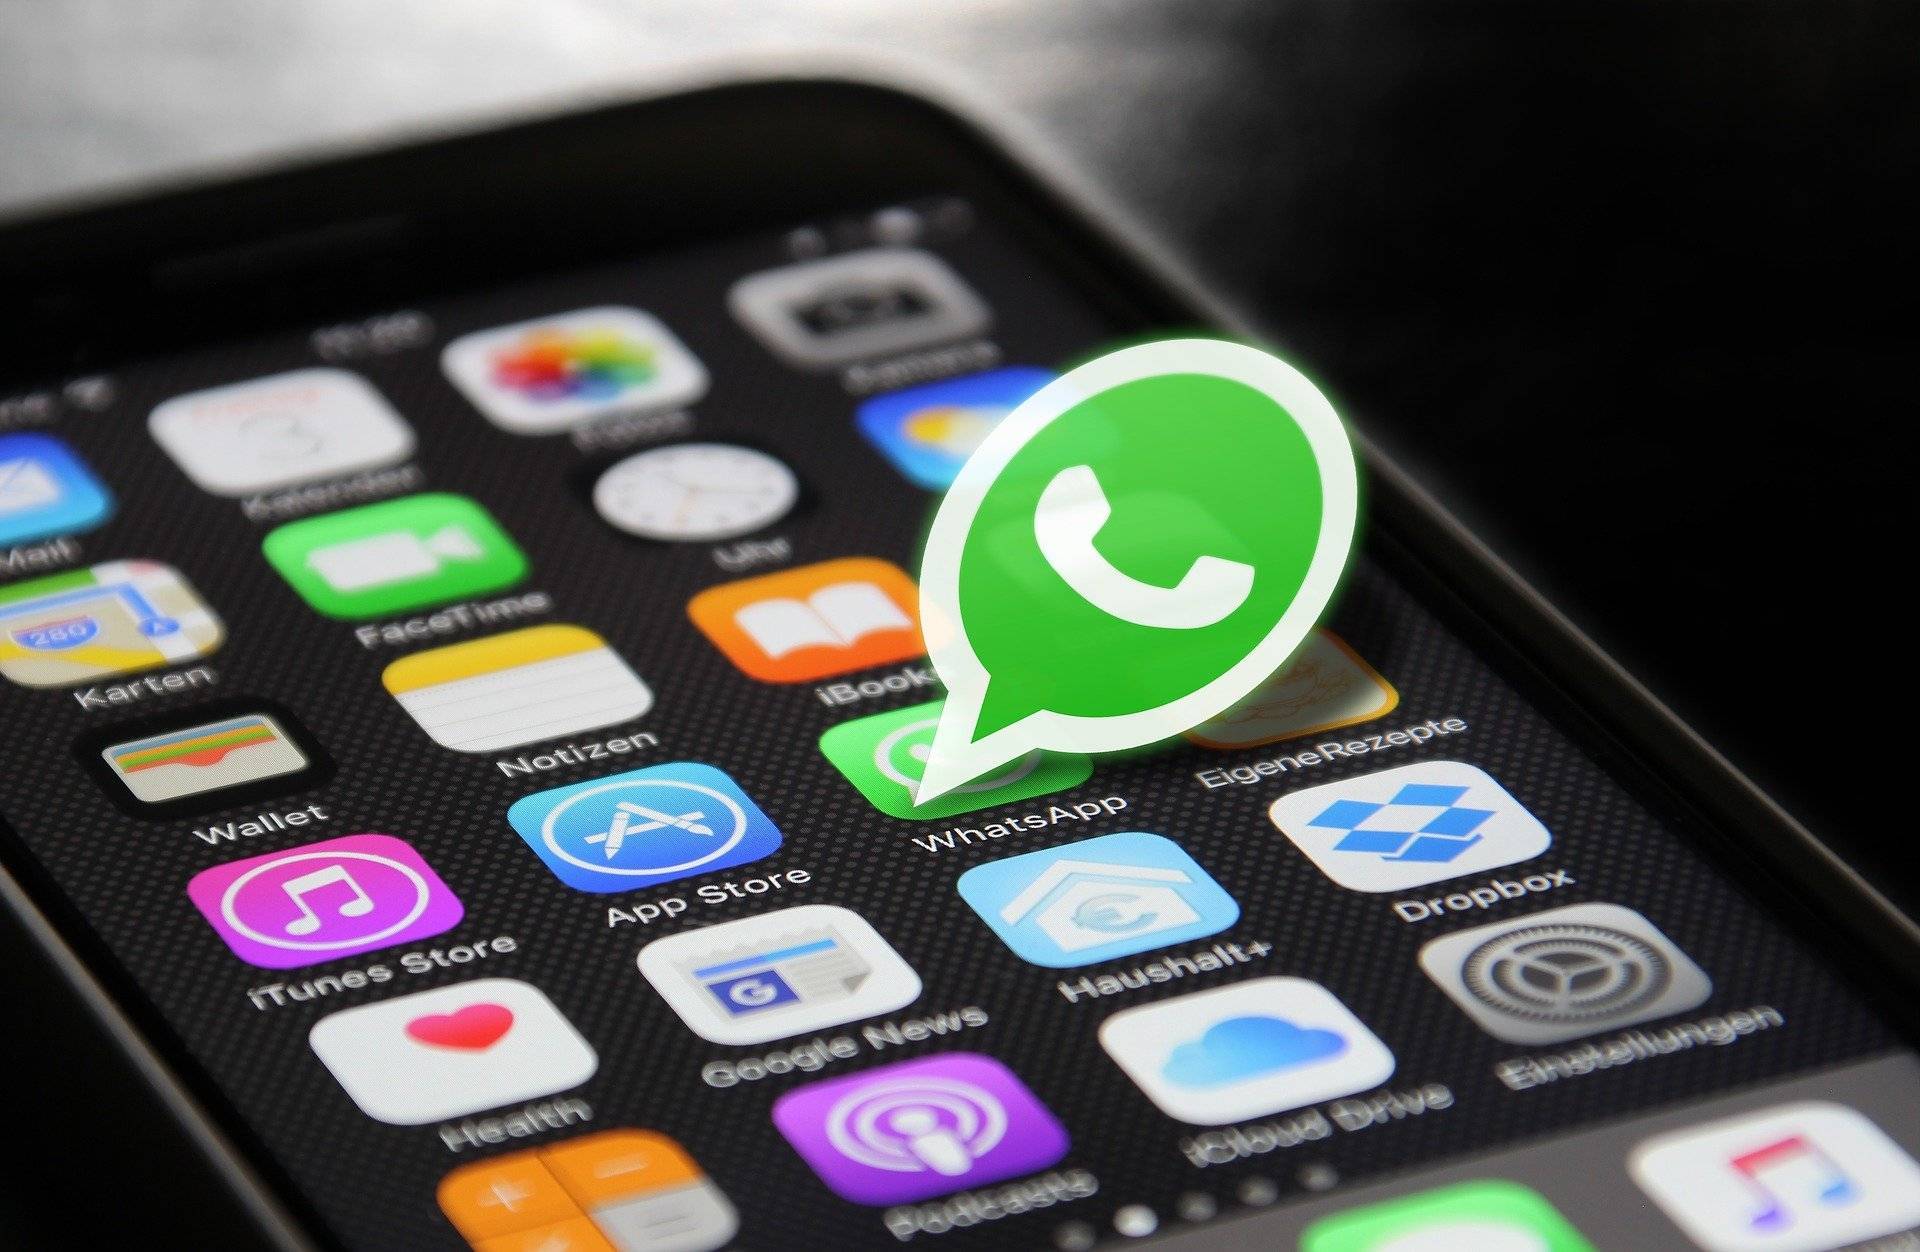 WhatsApp va permite utilizatorilor să trimită mesaje de pe computer fără a mai avea nevoie de telefon